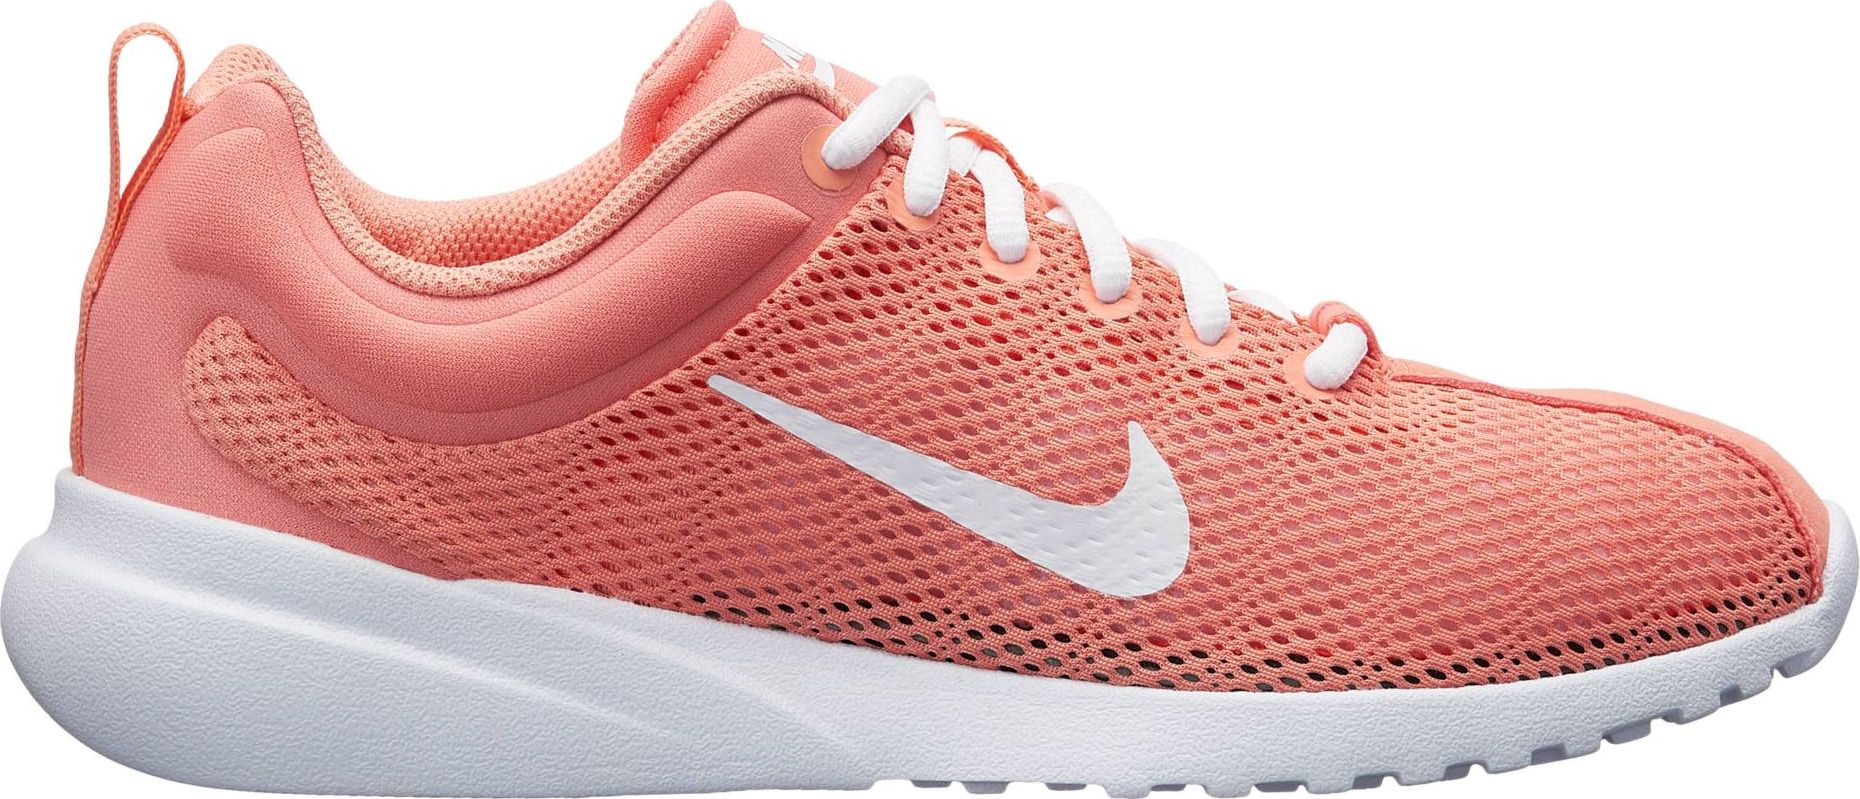 Кроссовки женские Nike Superflyte Shoe, цвет: розовый. 916784-601. Размер 5,5 (35)